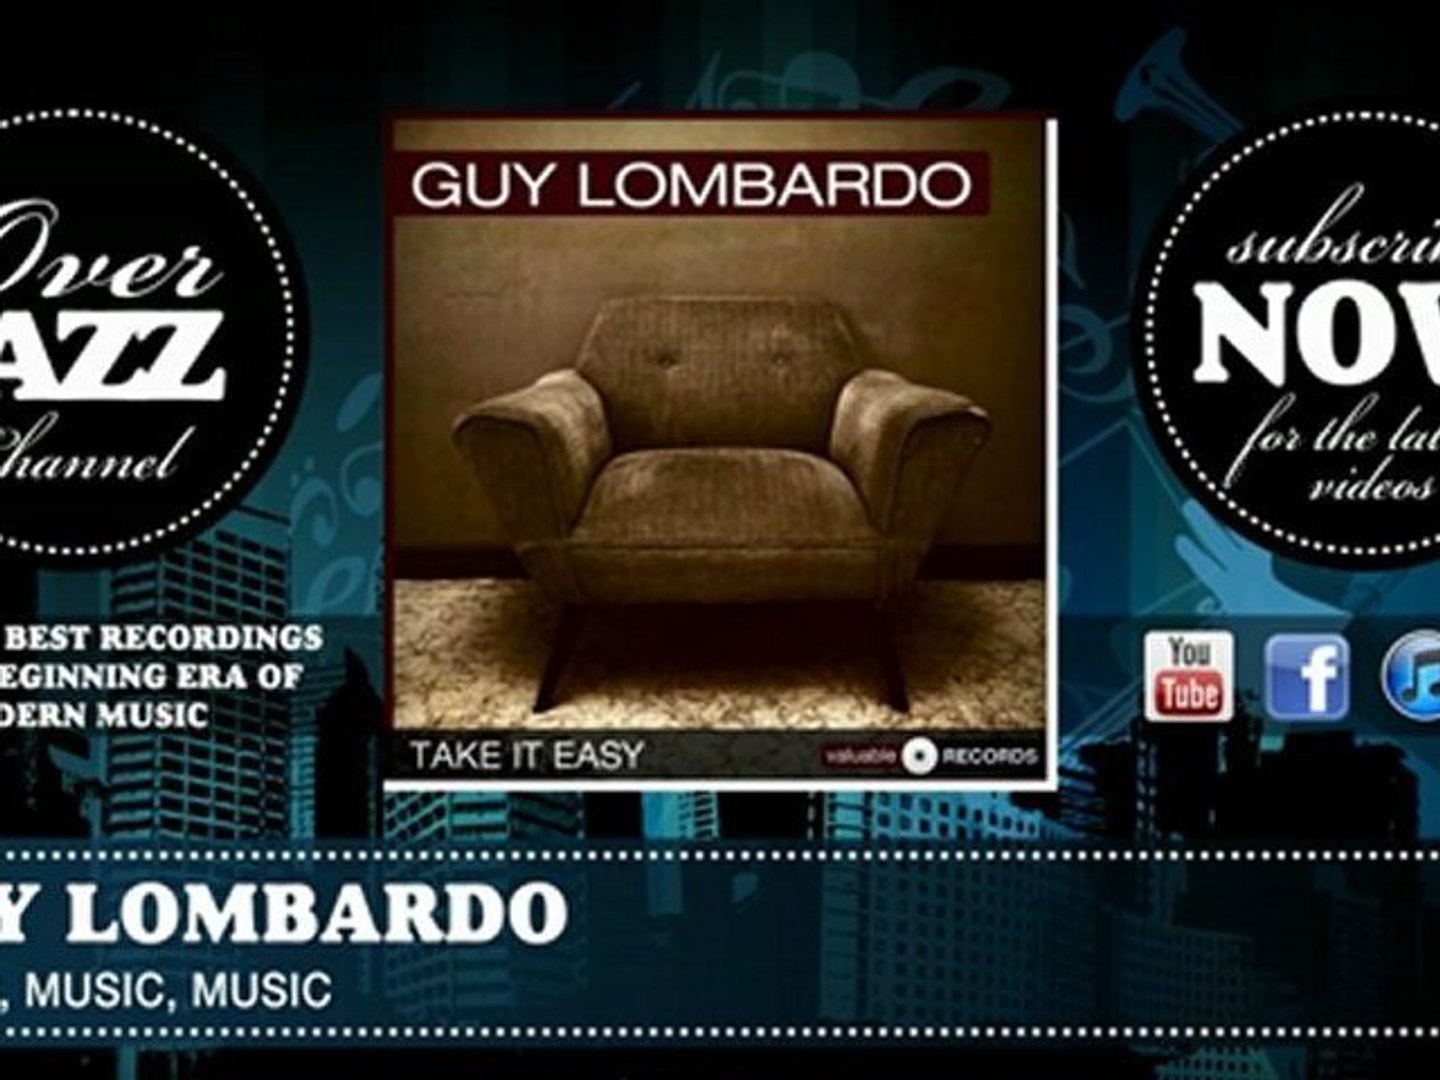 Guy Lombardo - Music, Music, Music (1950)